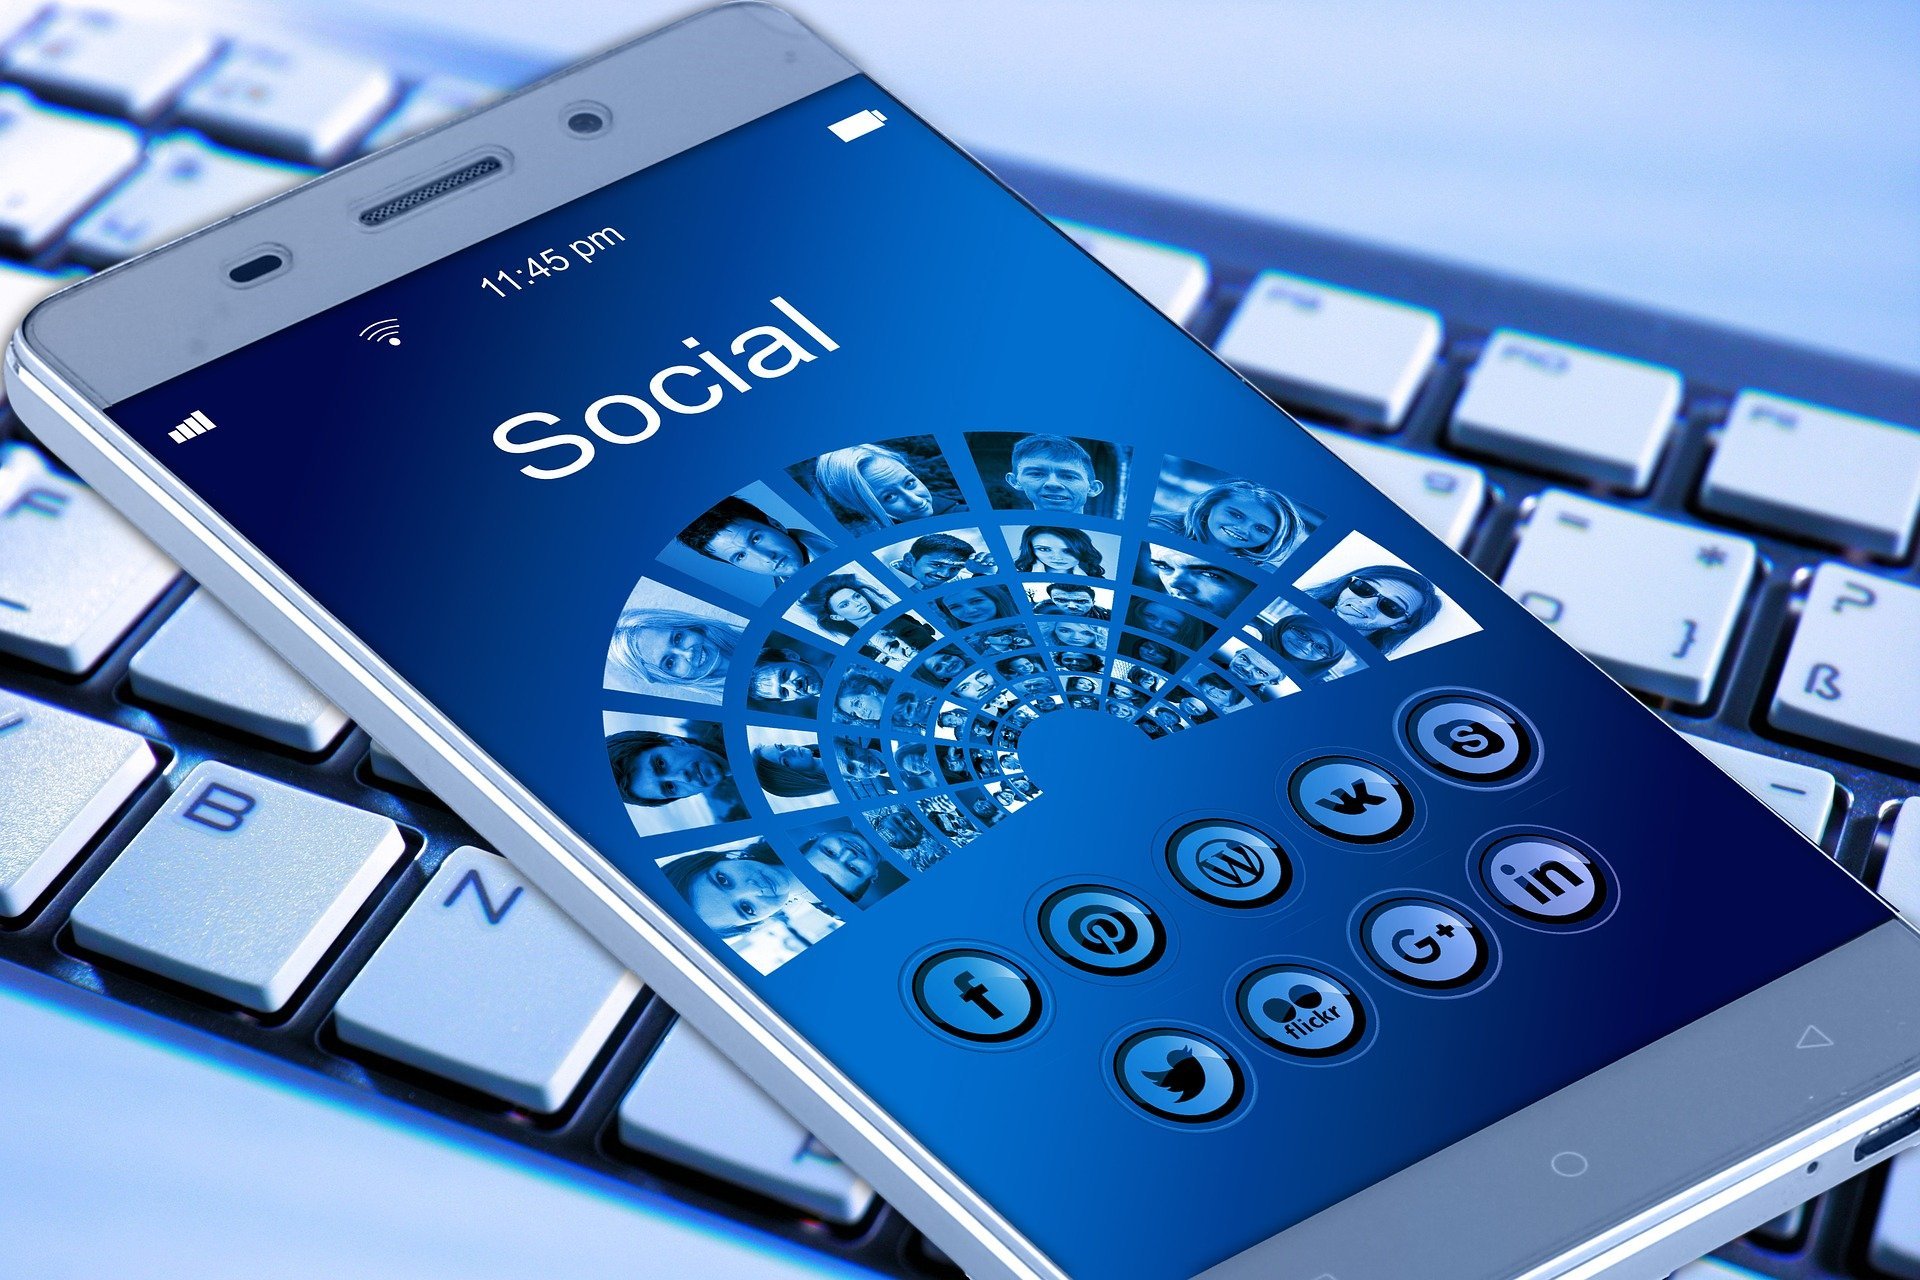 קידום ושיווק לעסקים במדיה החברתית